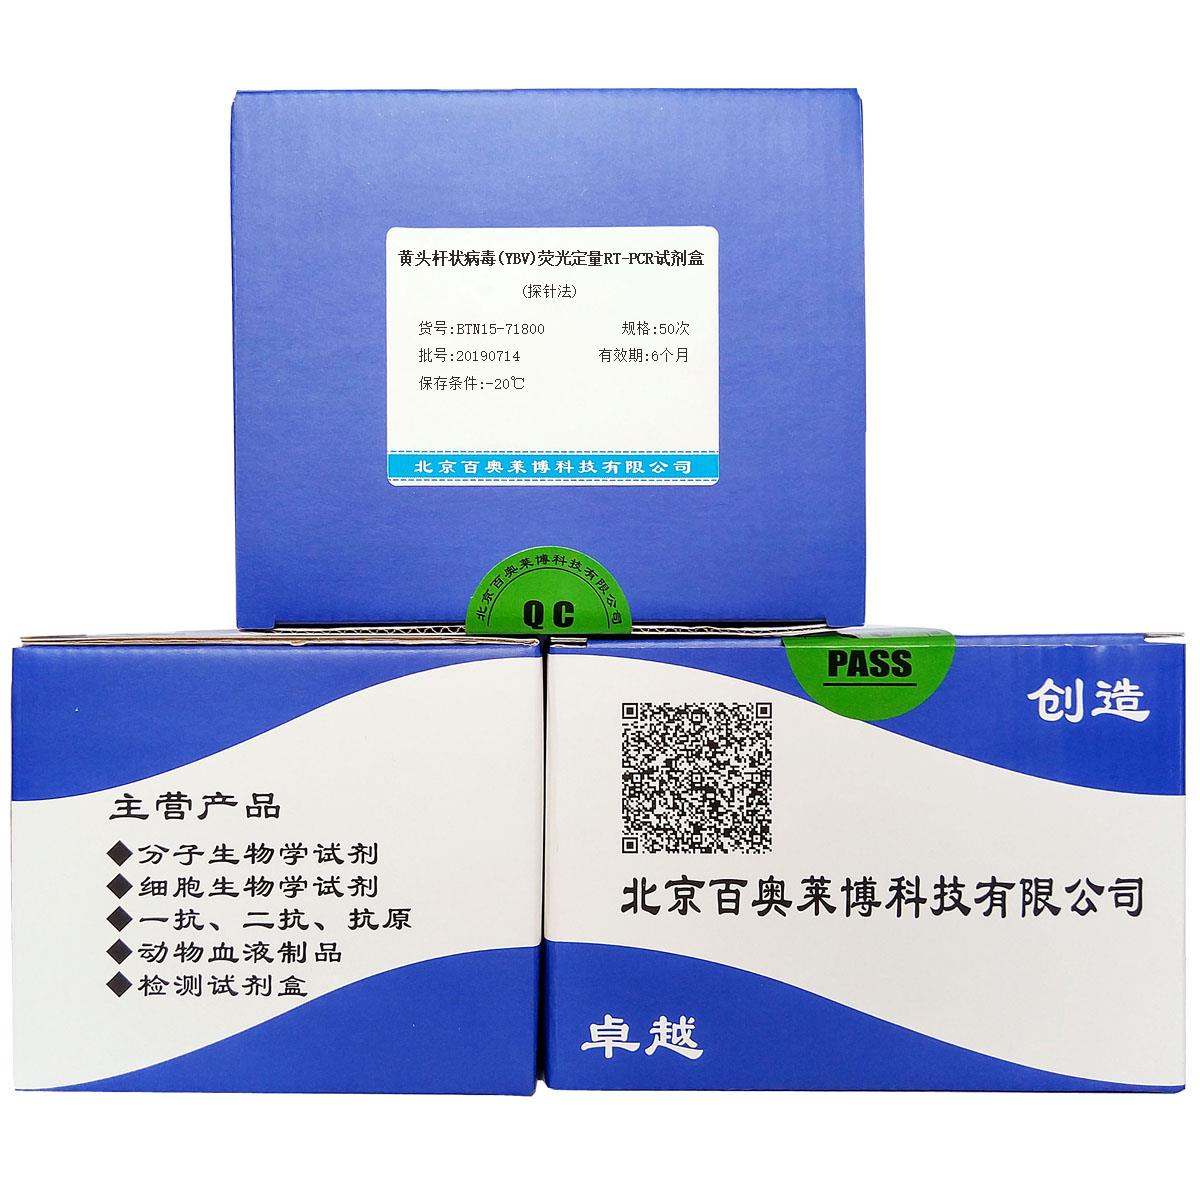 黄头杆状病毒(YBV)荧光定量RT-PCR试剂盒(探针法)